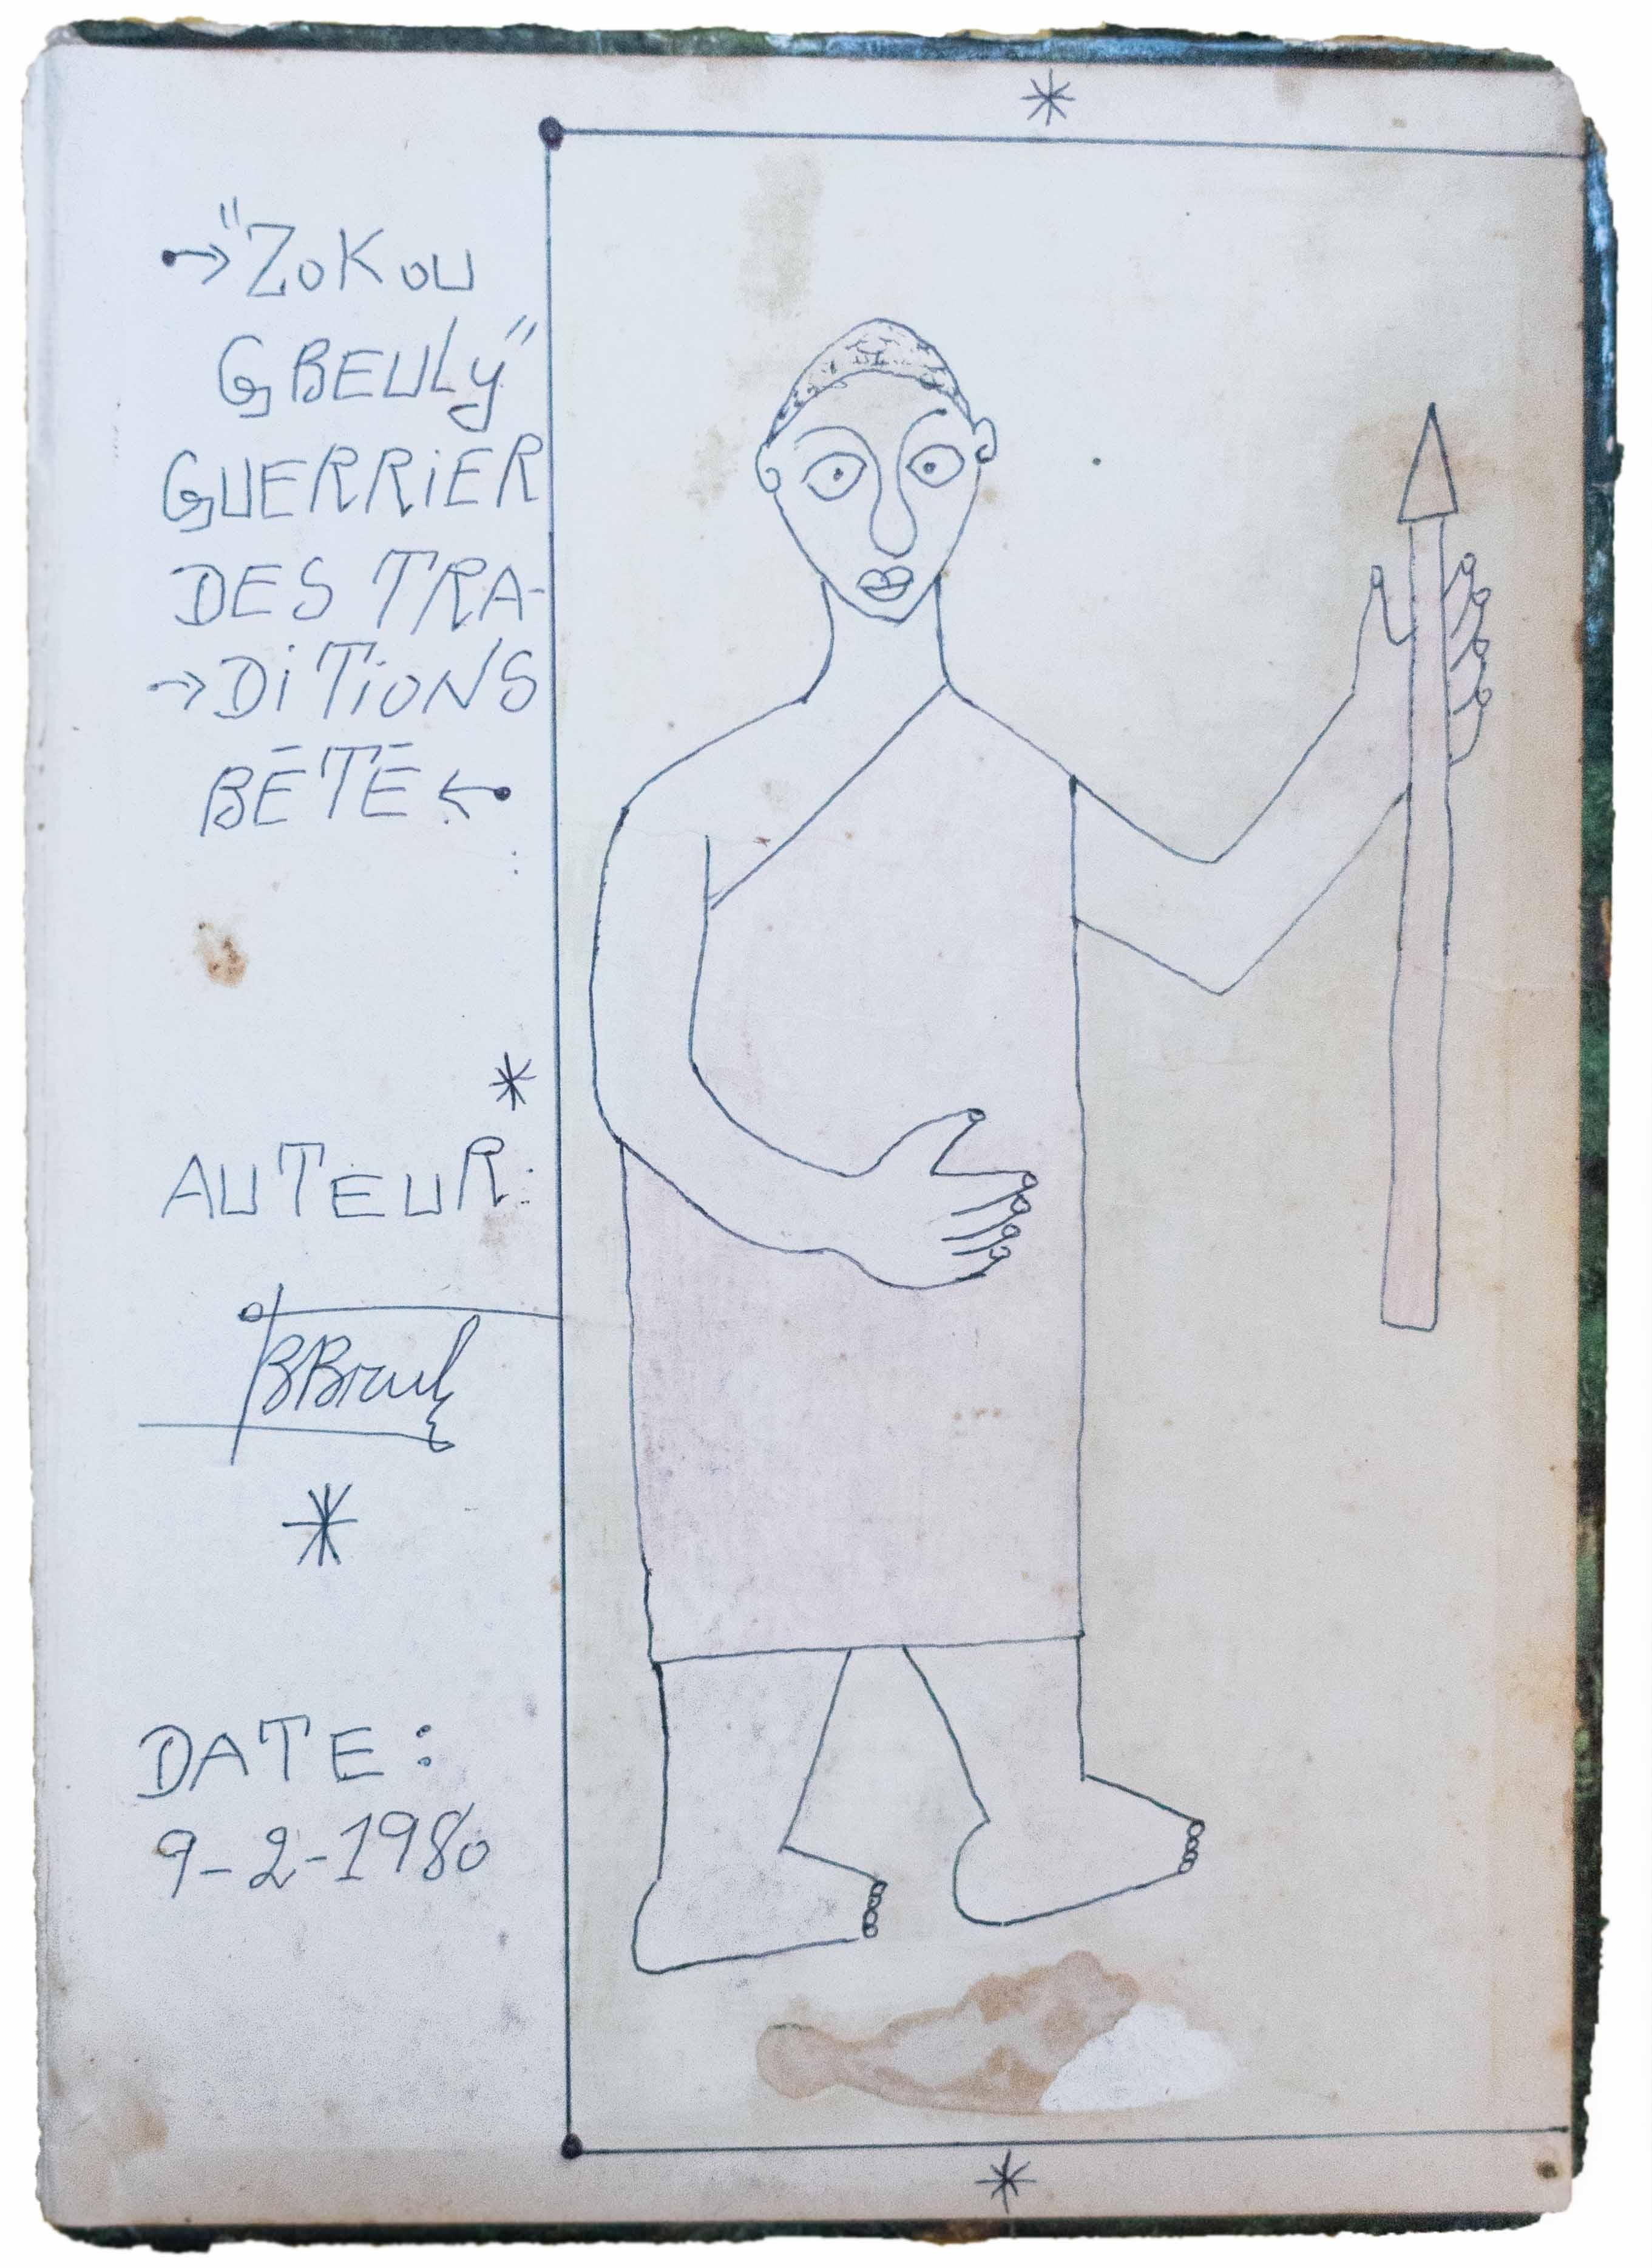 Frédéric Bruly Bouabré Figurative Art - Zokou Gbeuli guerrier des traditions Bété, 1980, African Art, Drawing